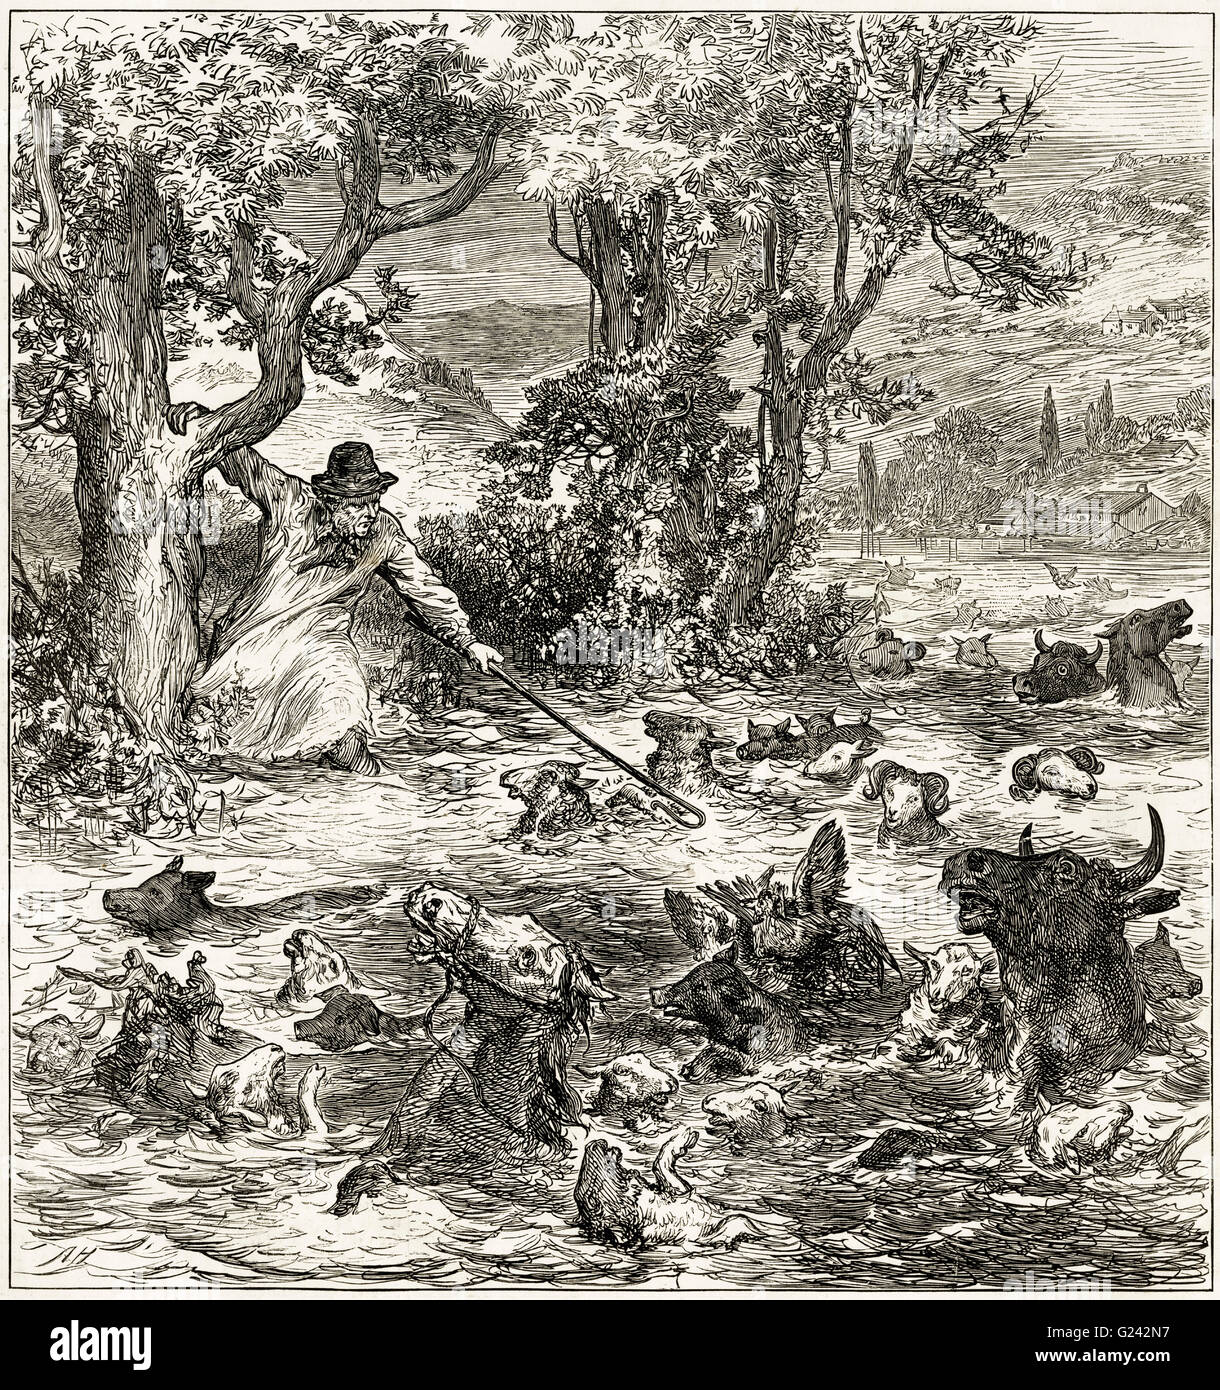 Agricoltore il tentativo di salvataggio del bestiame da inondazioni nei pressi di Cardiff Galles del Sud Luglio 1875. Victorian xilografia incisione datata 1875 Foto Stock